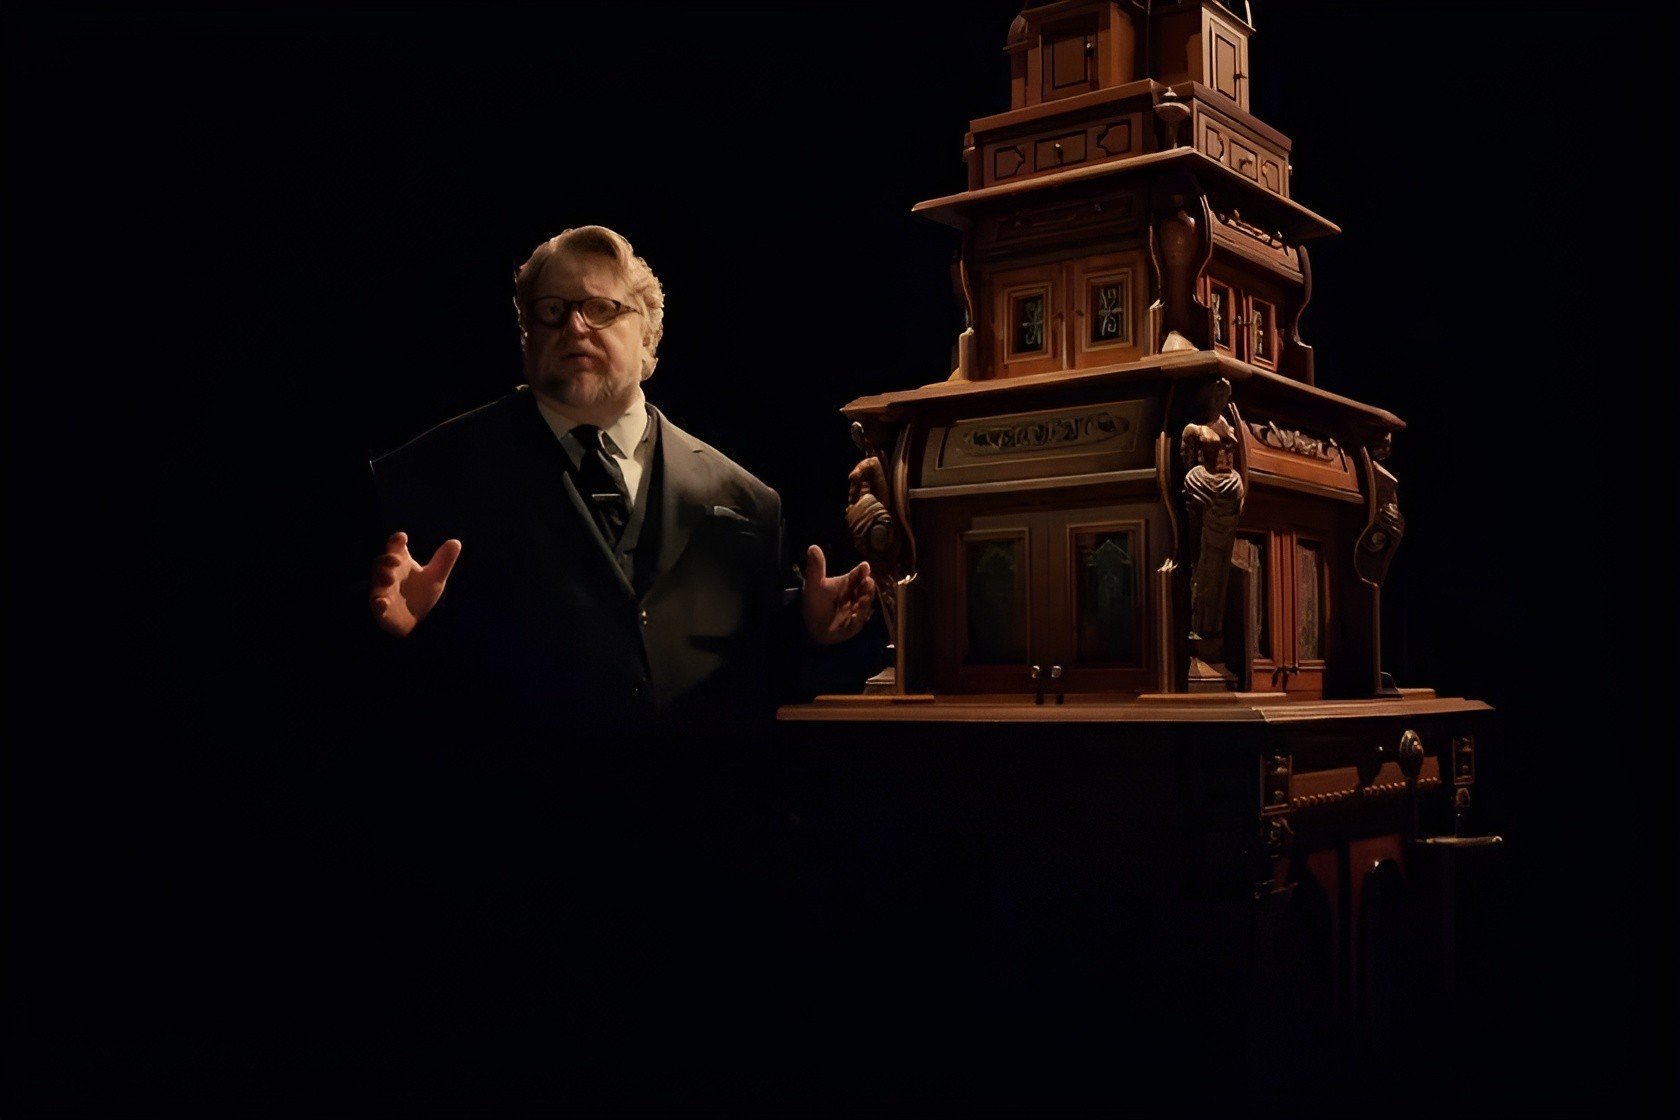 El gabinete de las curiosidades de Guillermo del Toro